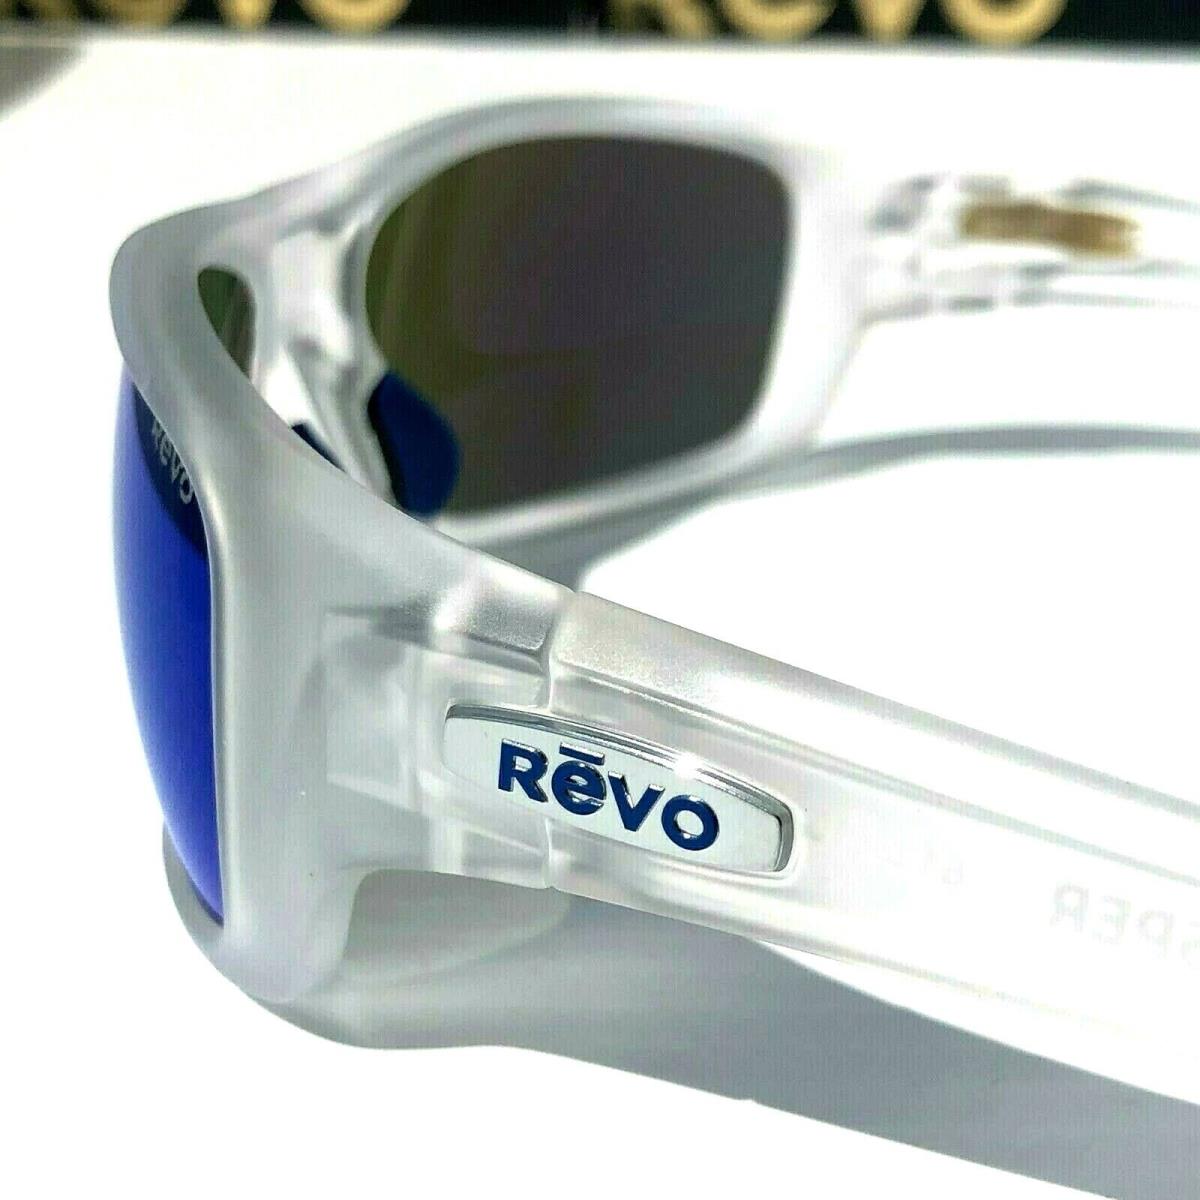 Revo sunglasses Jasper - Black Frame, Blue Lens